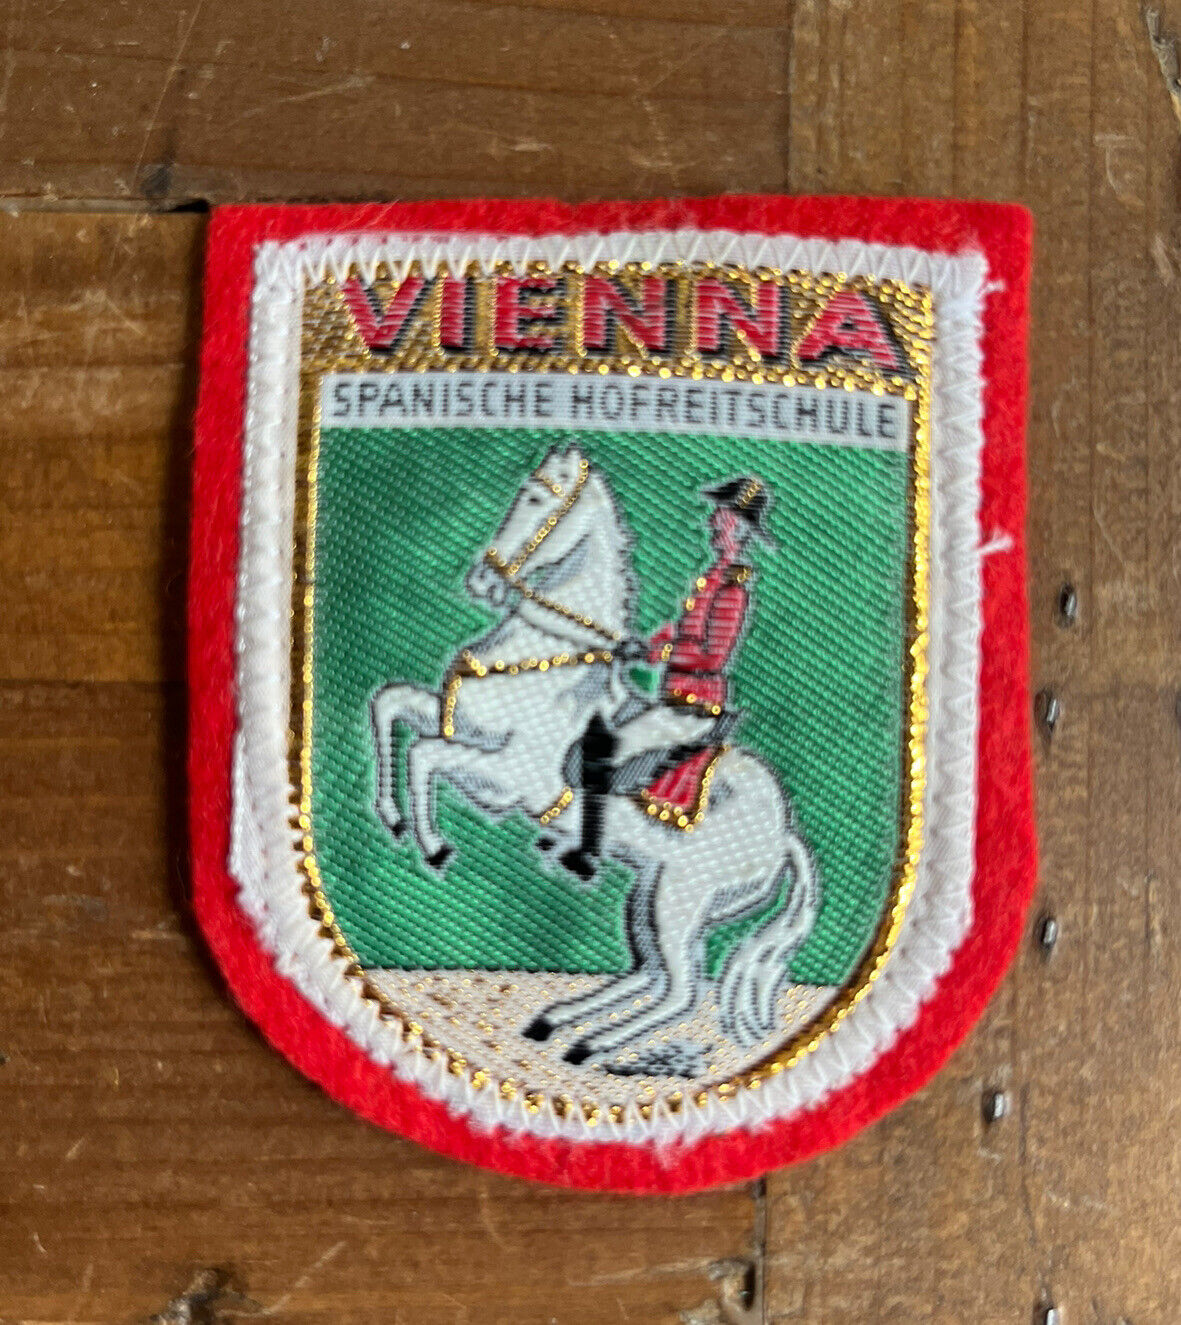 Vienna Spanische Hofreitschule Riding School Patch Badge AUSTRIA Souvenir Travel